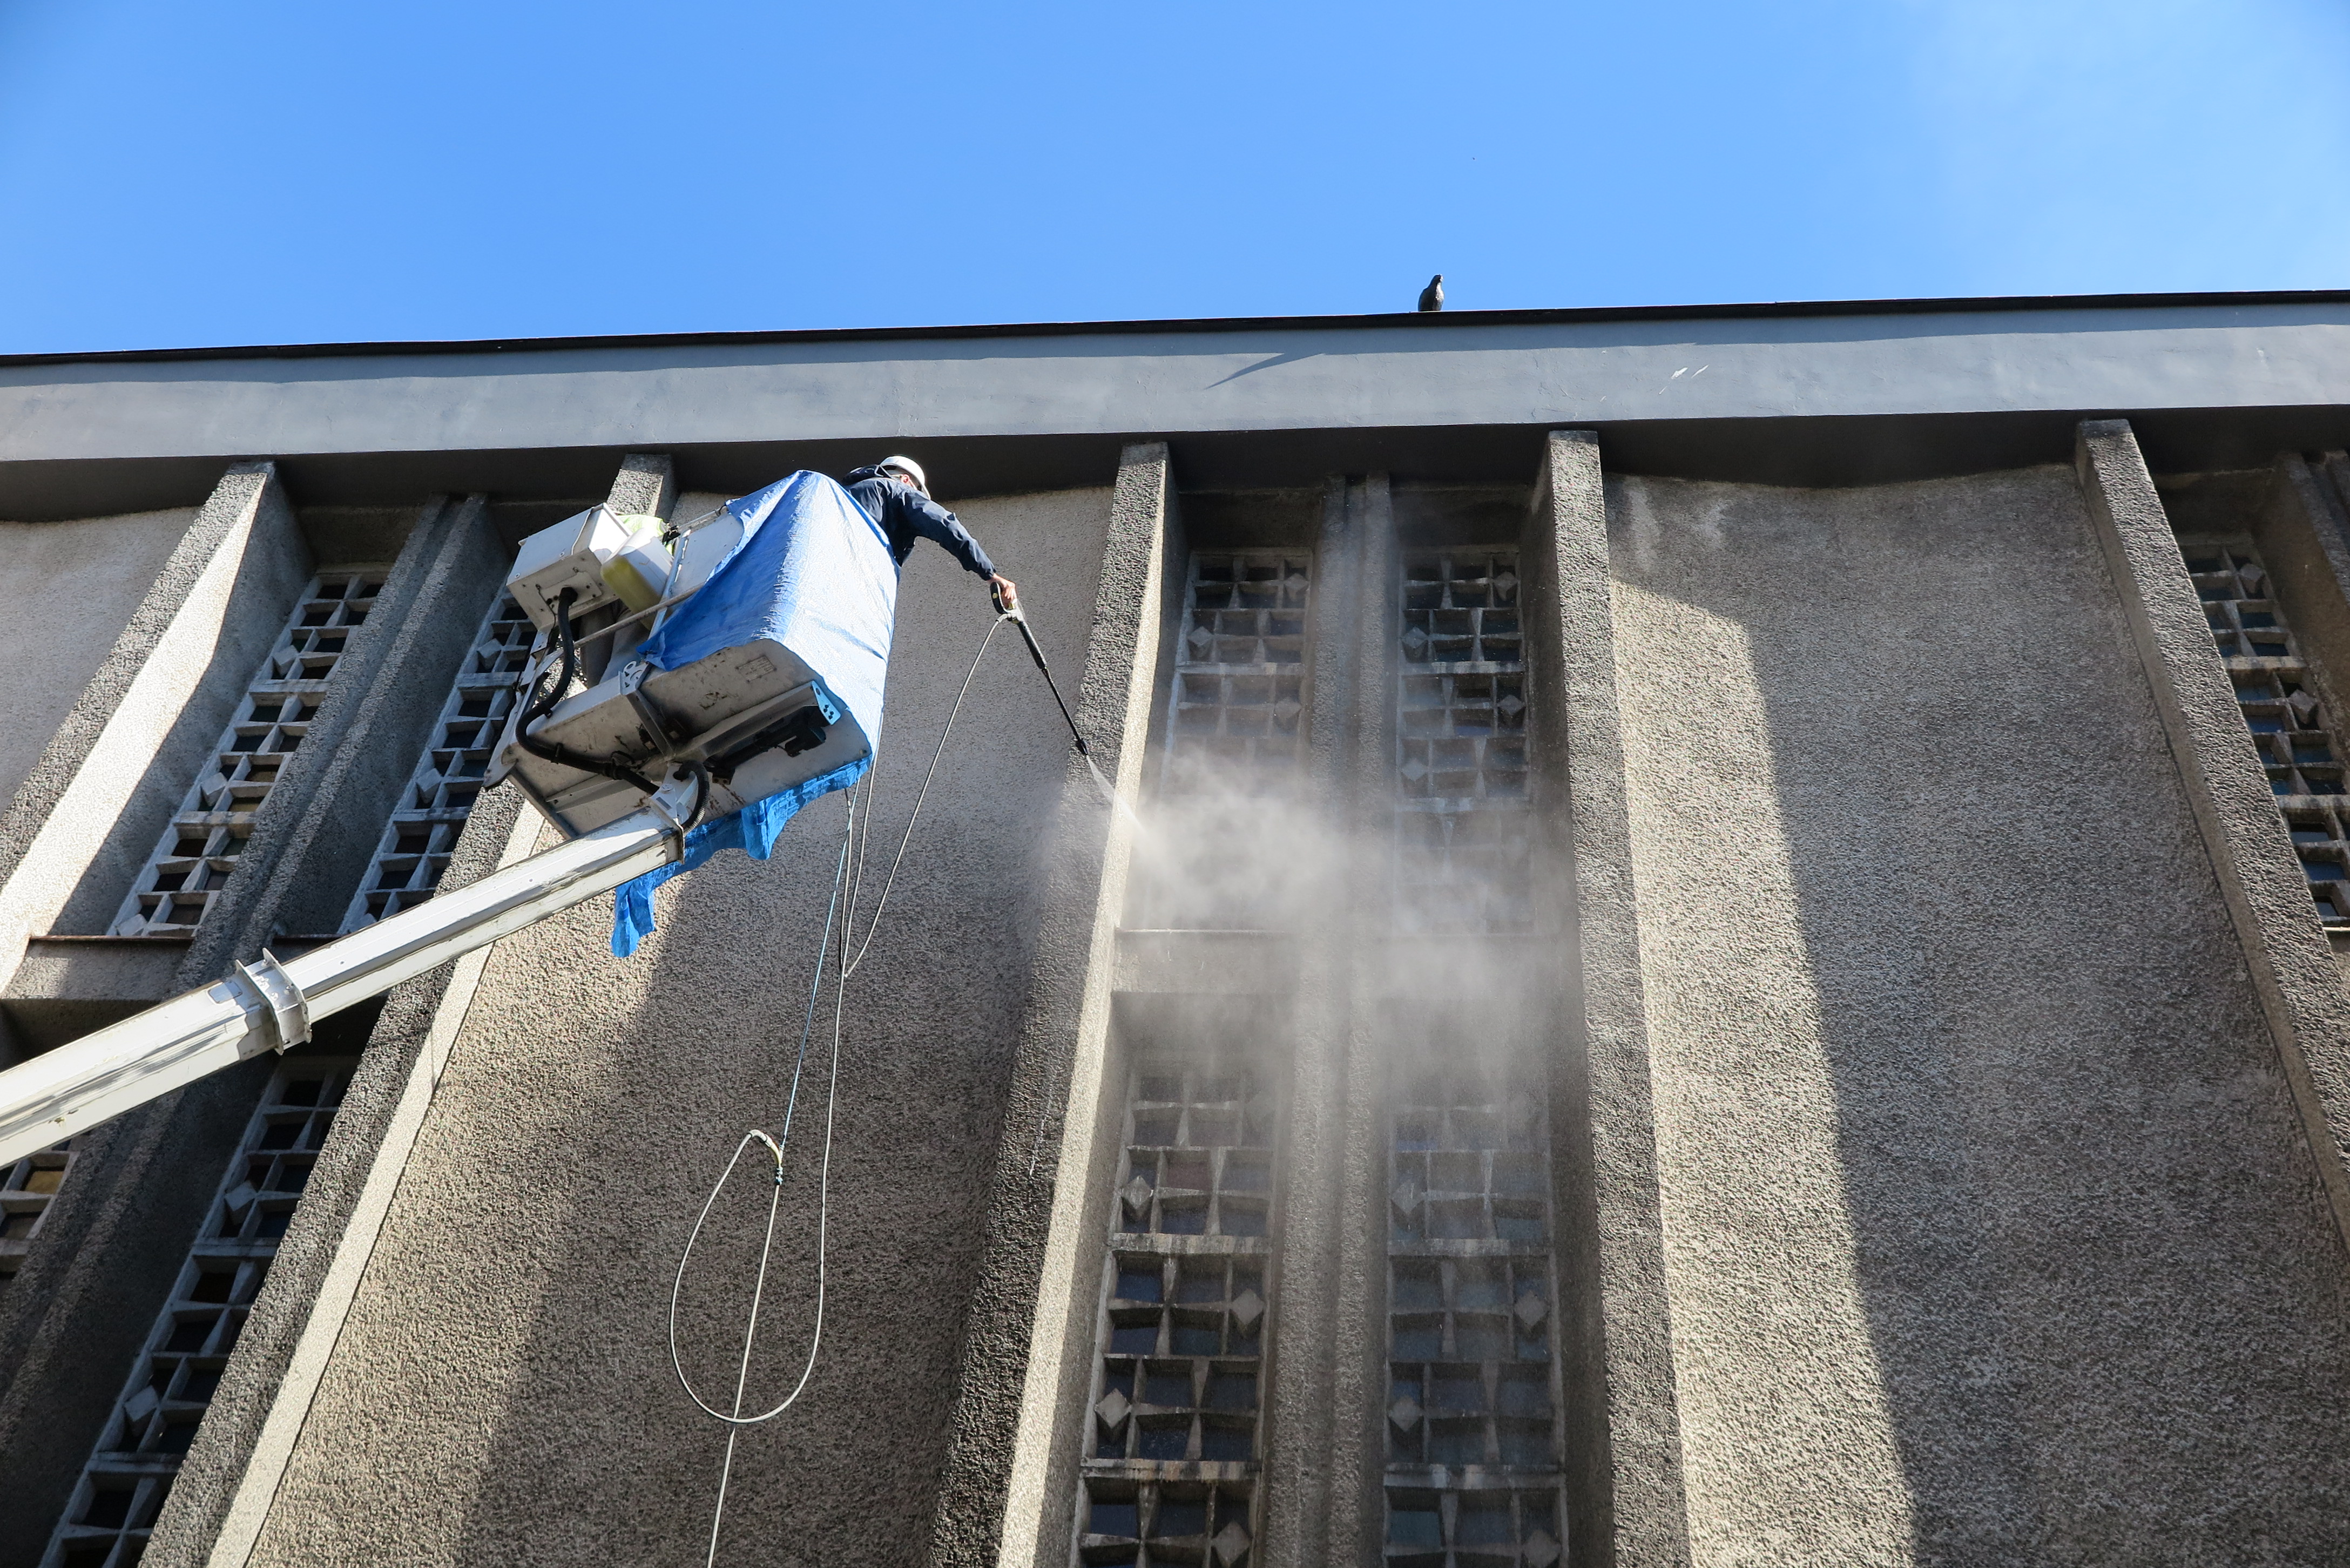  Kościół parafialny p.w. NSPJ w Gdyni - w trakcie czyszczenia elewacji. Widoczne wyraźnie oczyszczone partie tynku